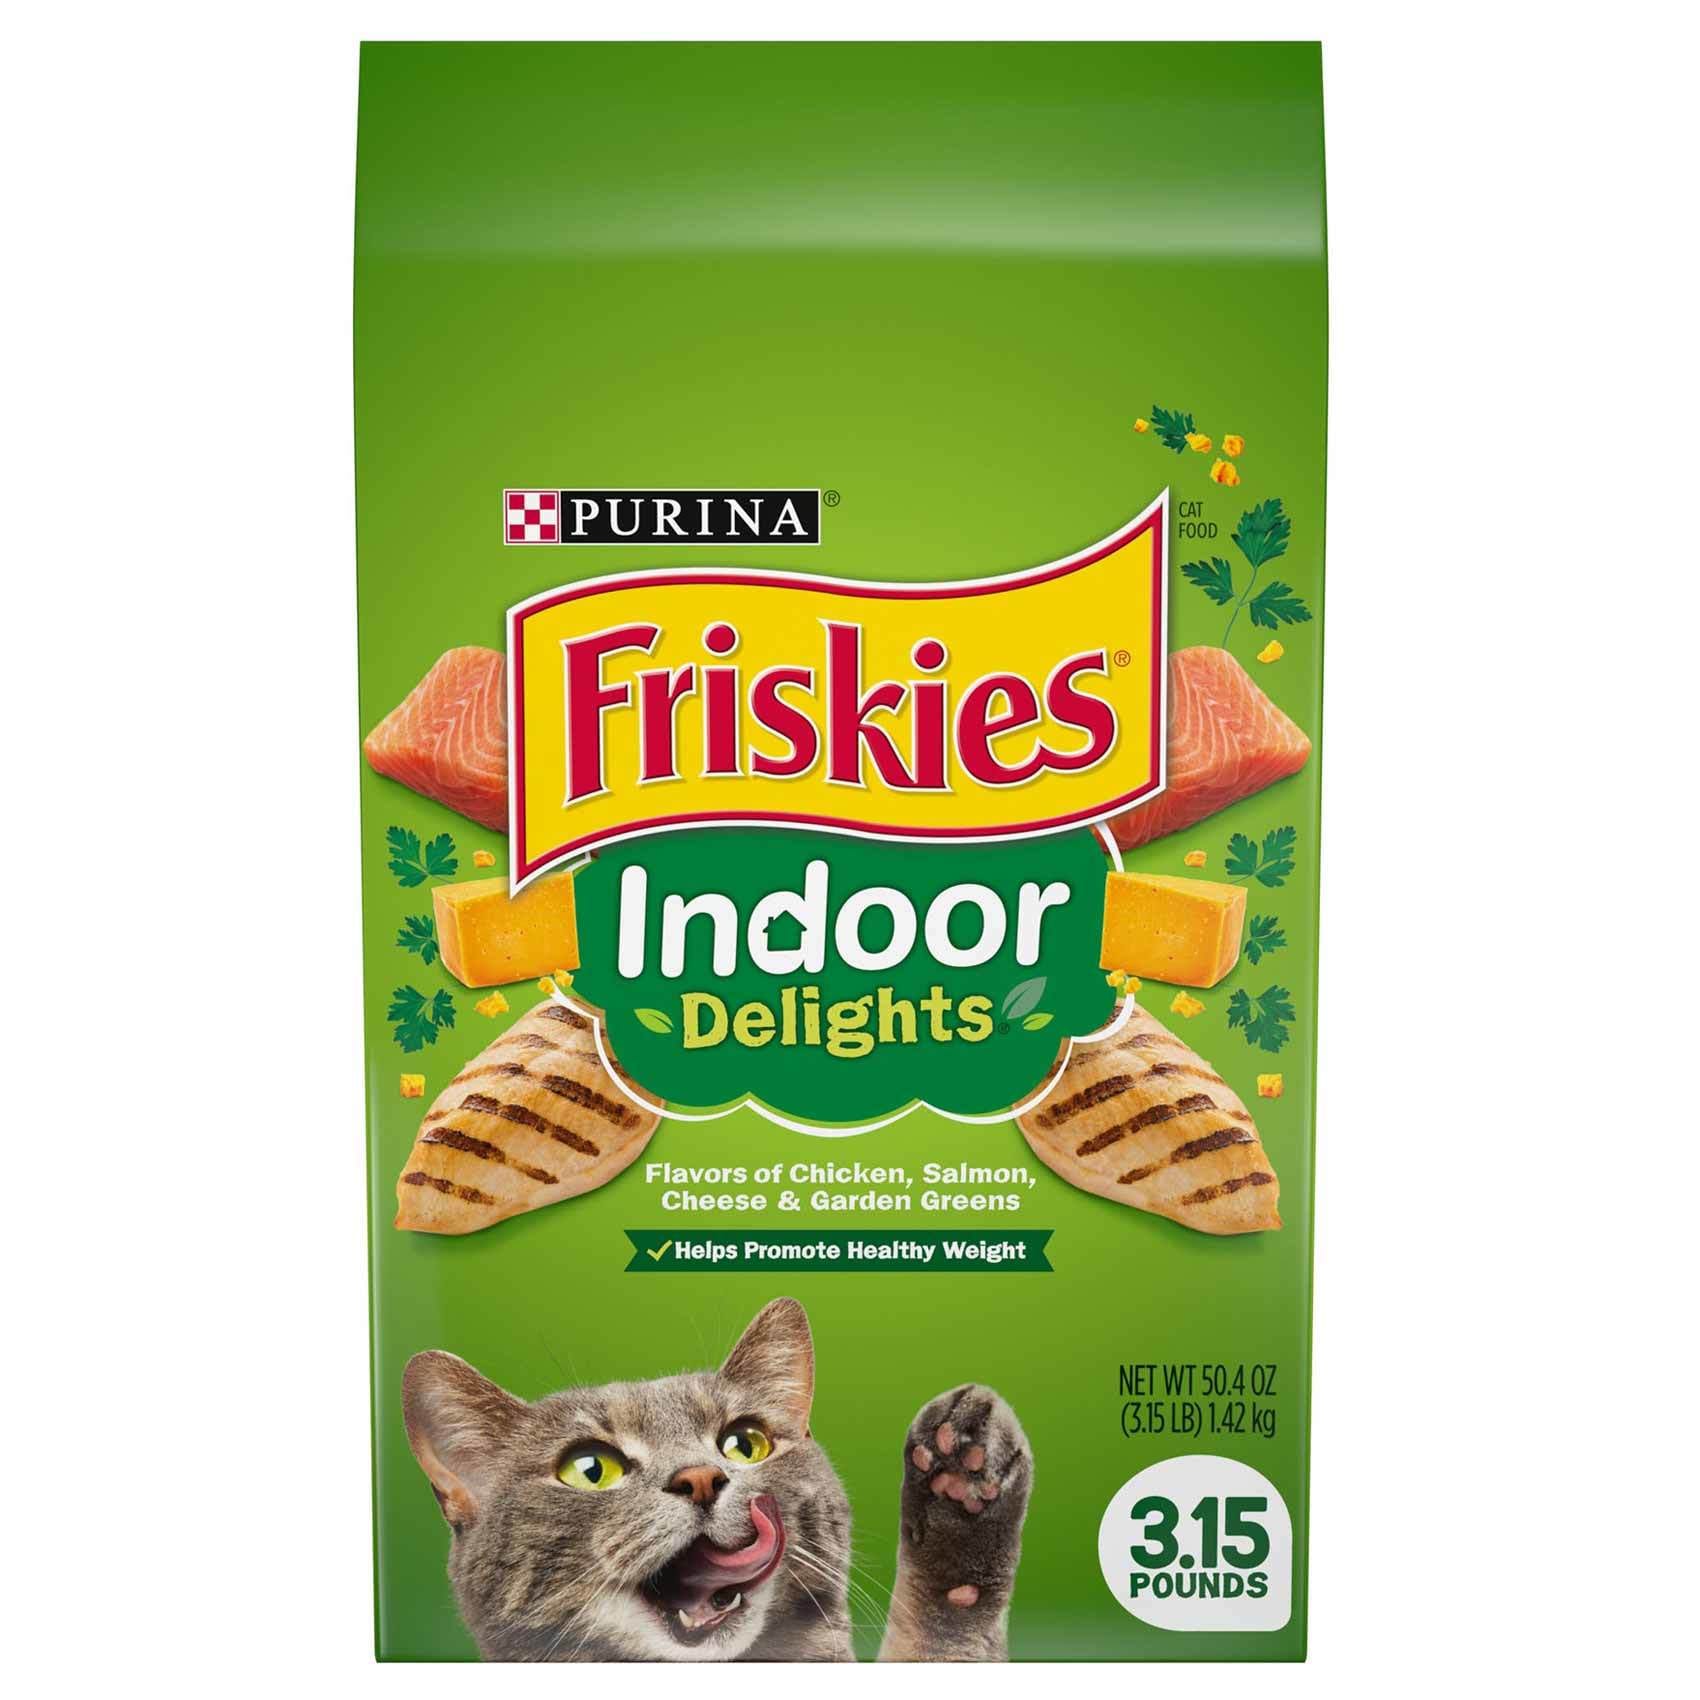 Buy Purina Friskies Indoor Delights Cat Food 1.42kg Online Shop on